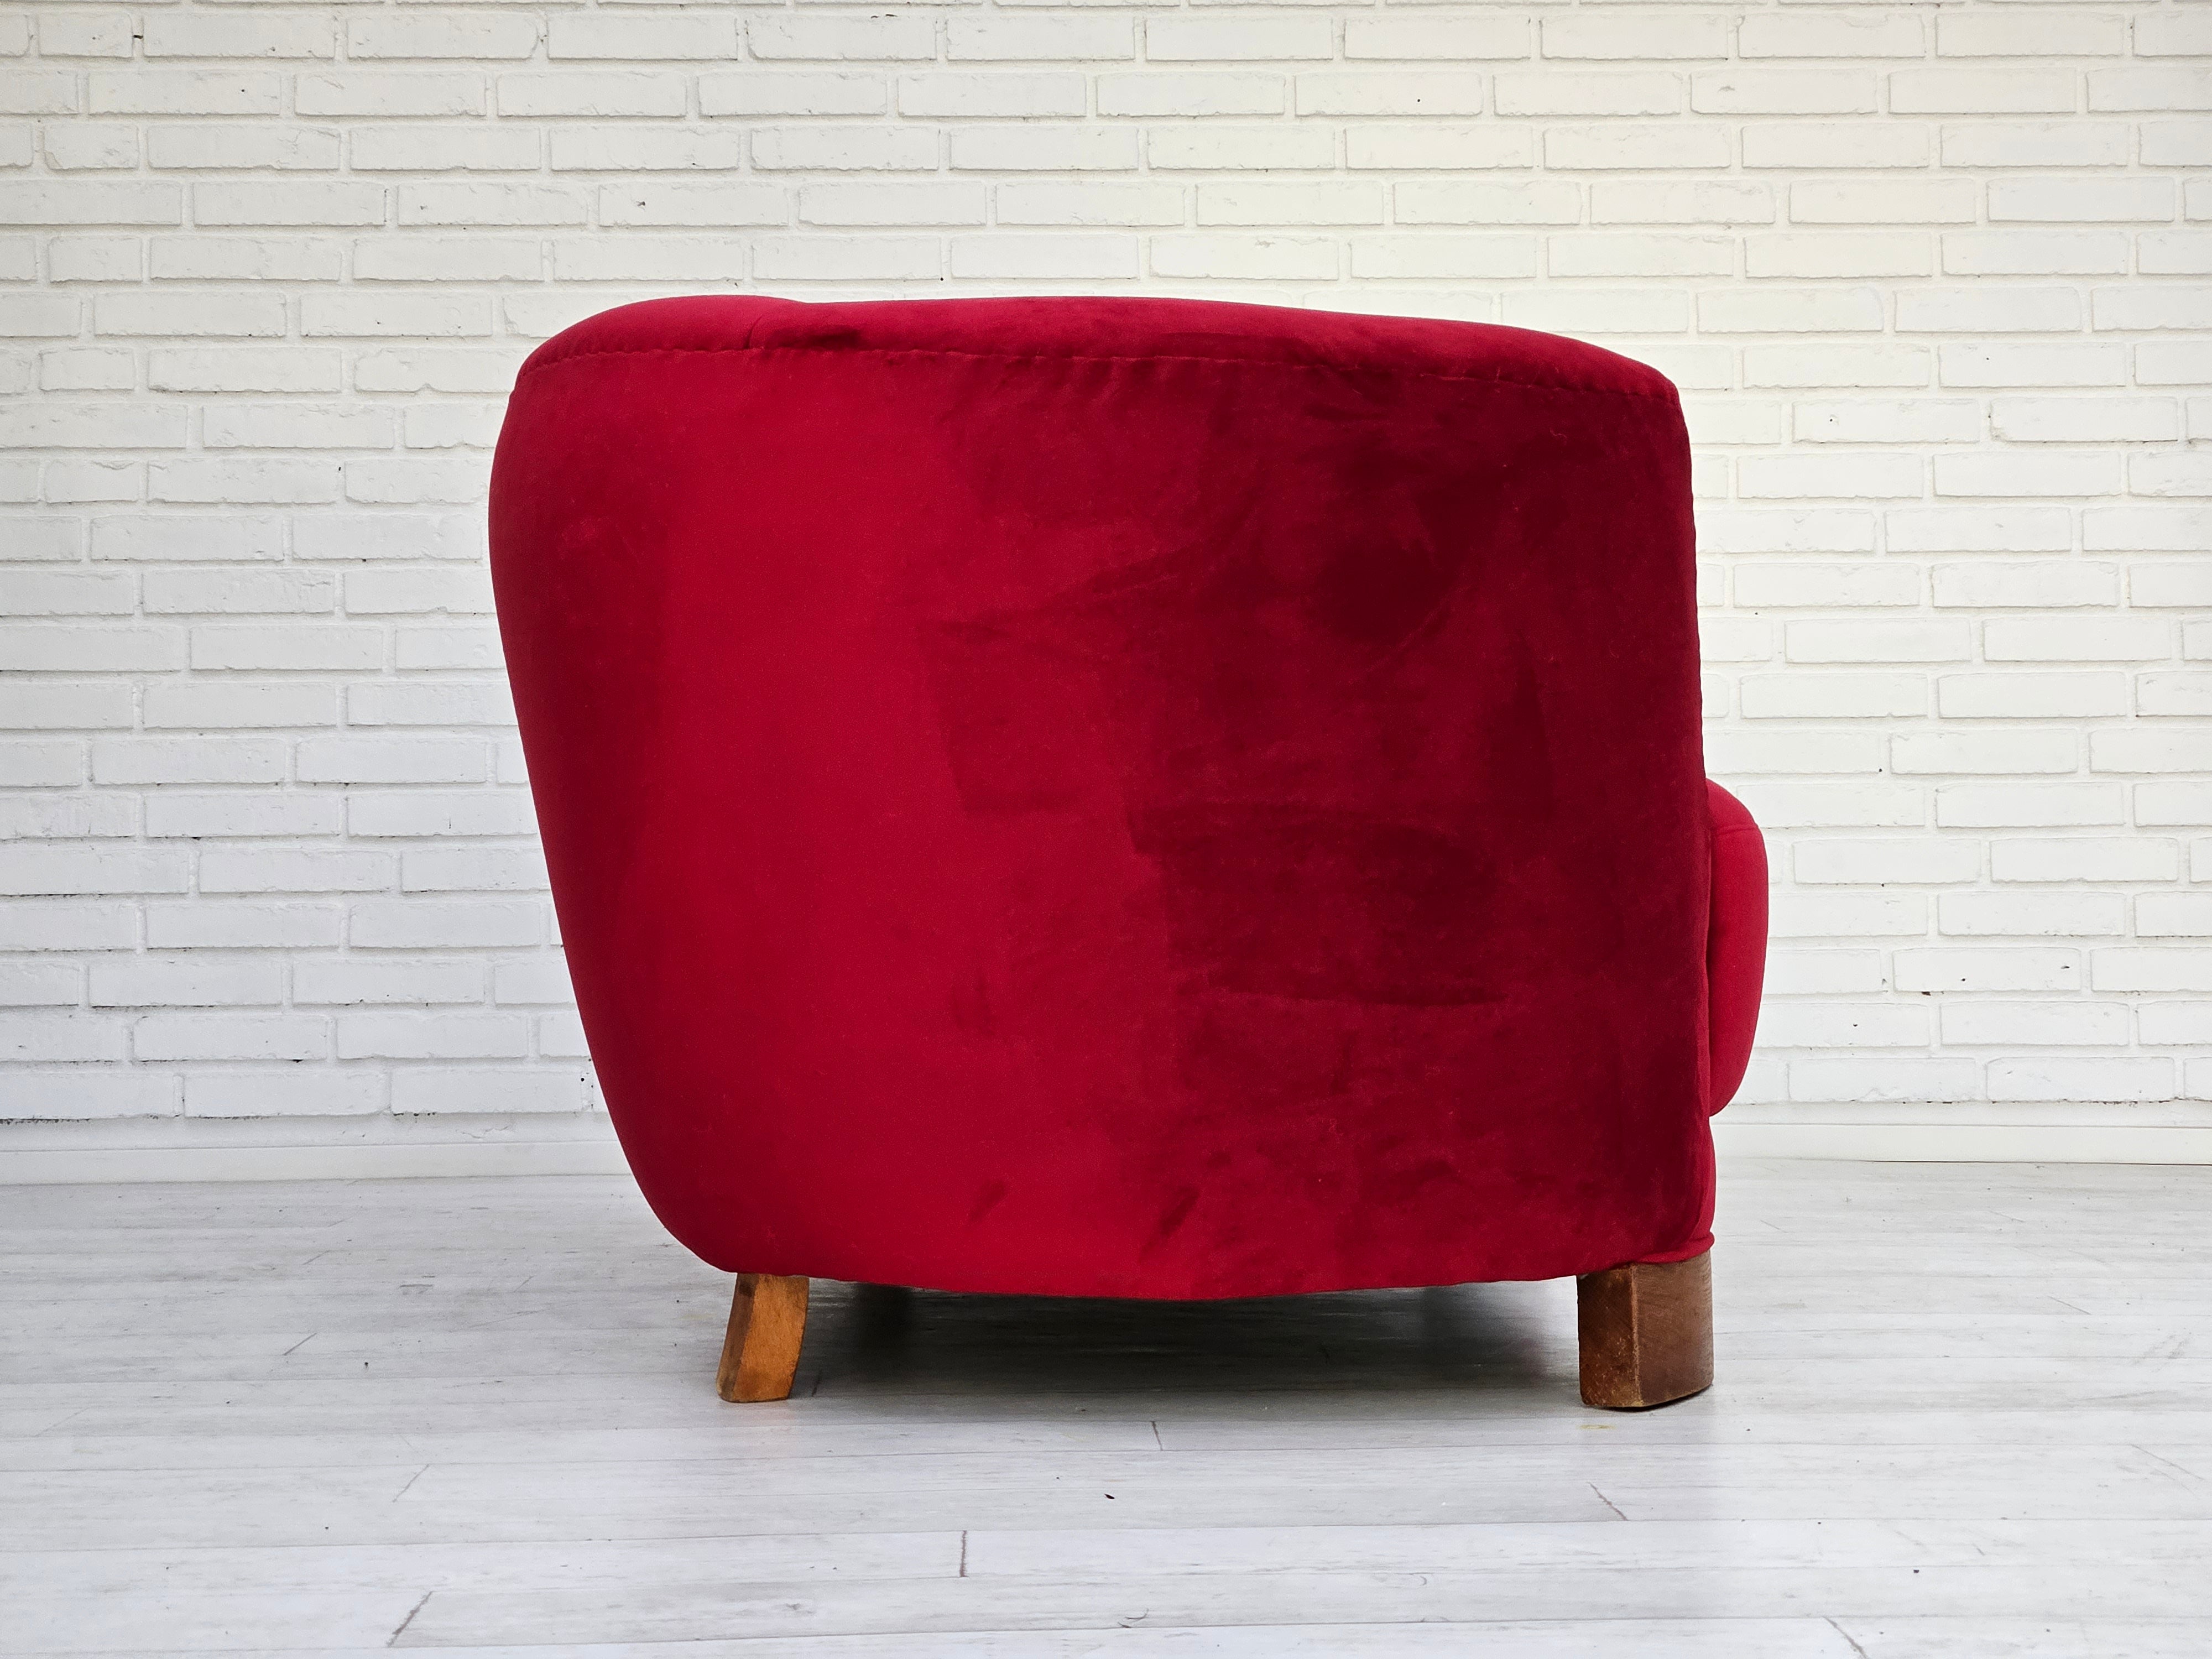 1960erne, Dansk design, renoveret 2 pers. "Banana" sofa, vintage velour.